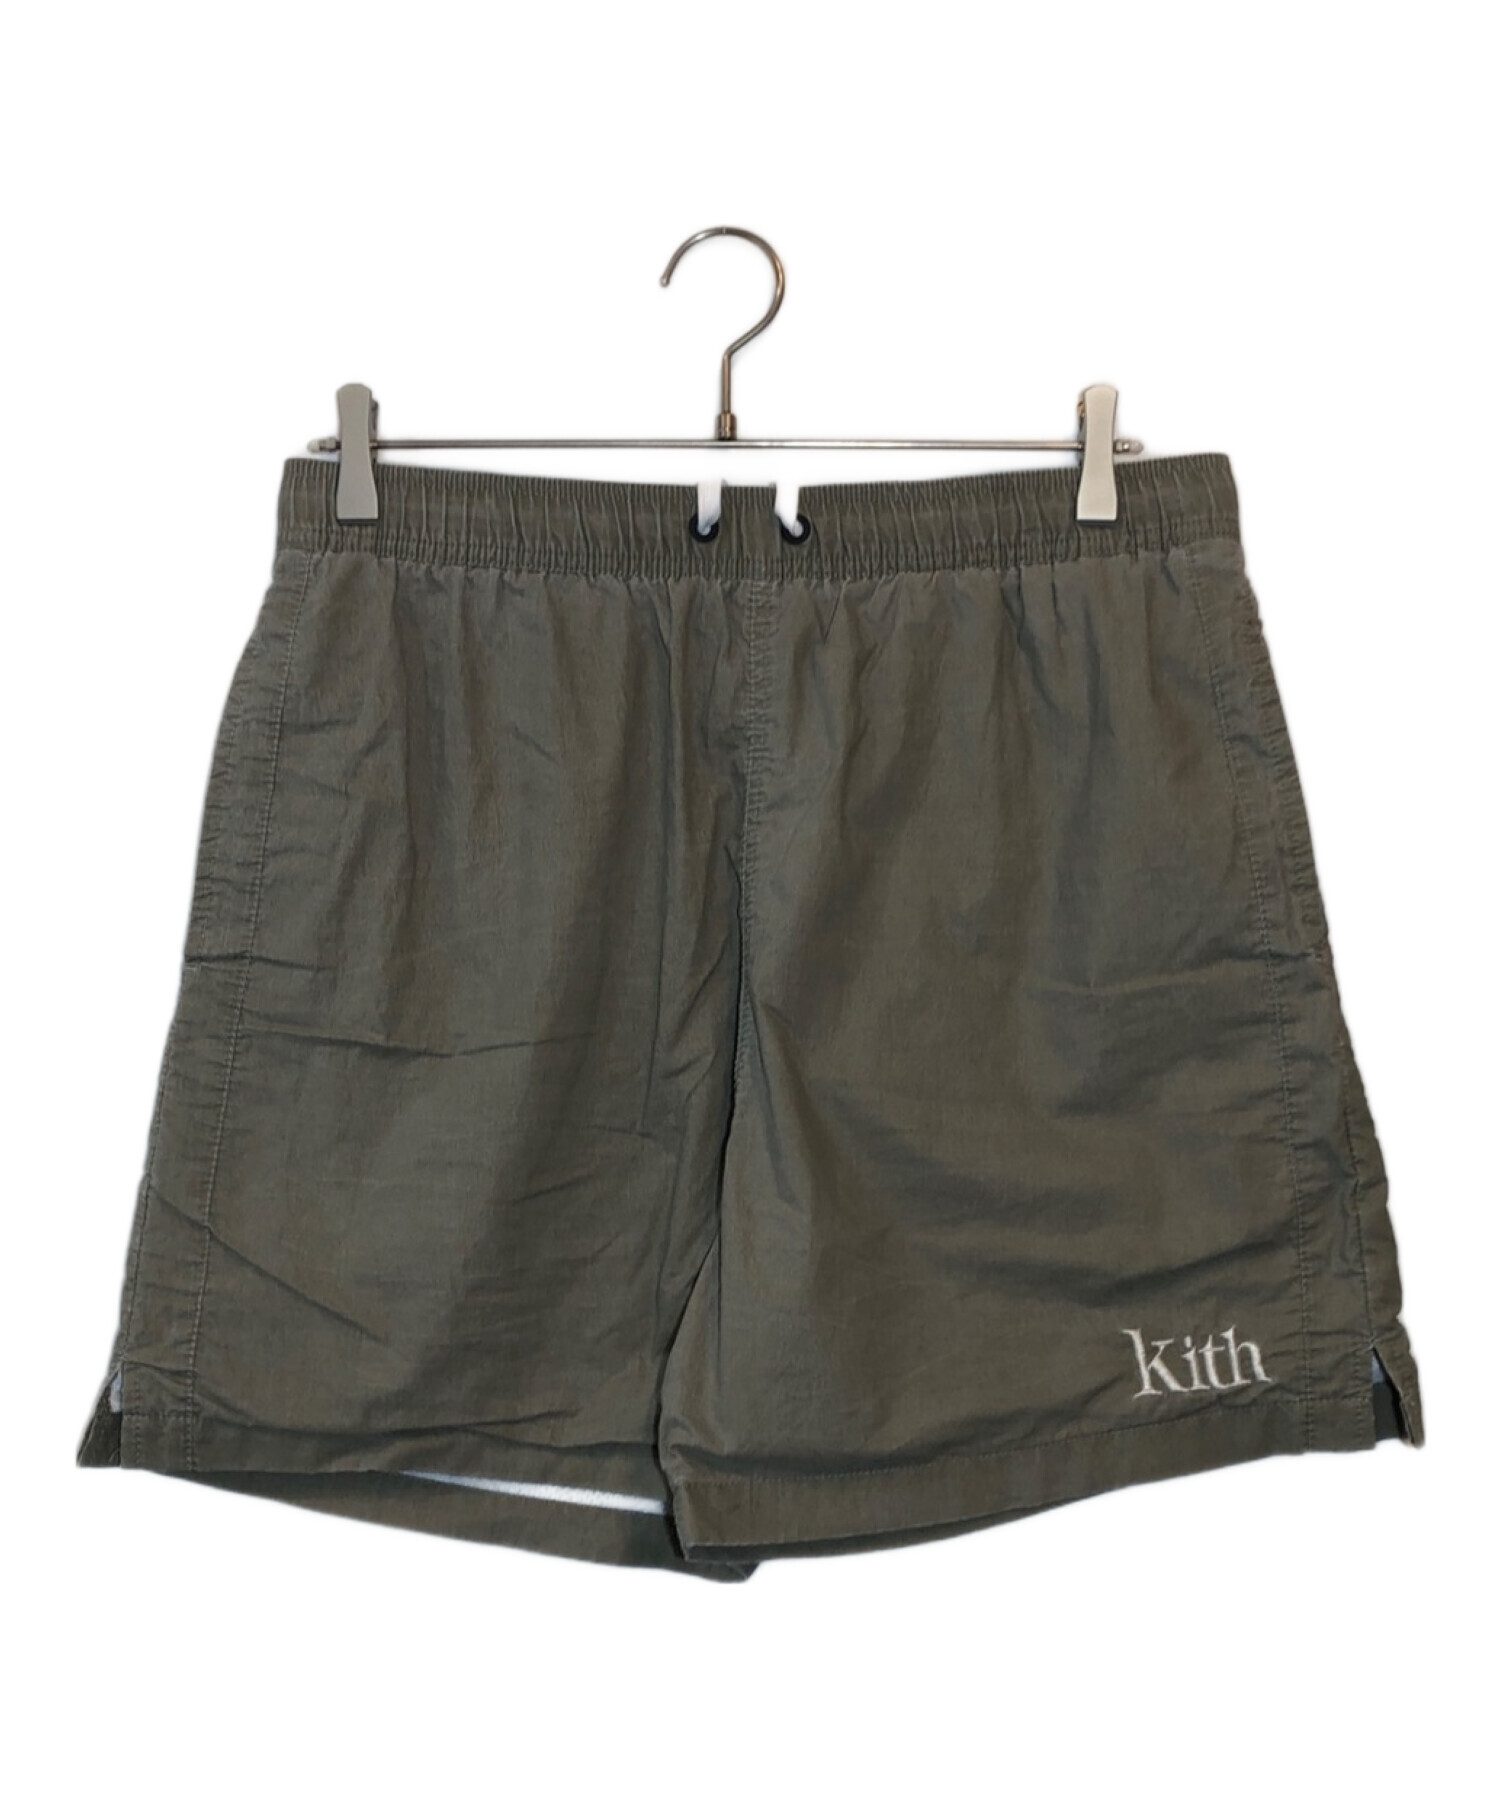 KITH (キス) ロゴ刺繍スイムショートパンツ グレー サイズ:M